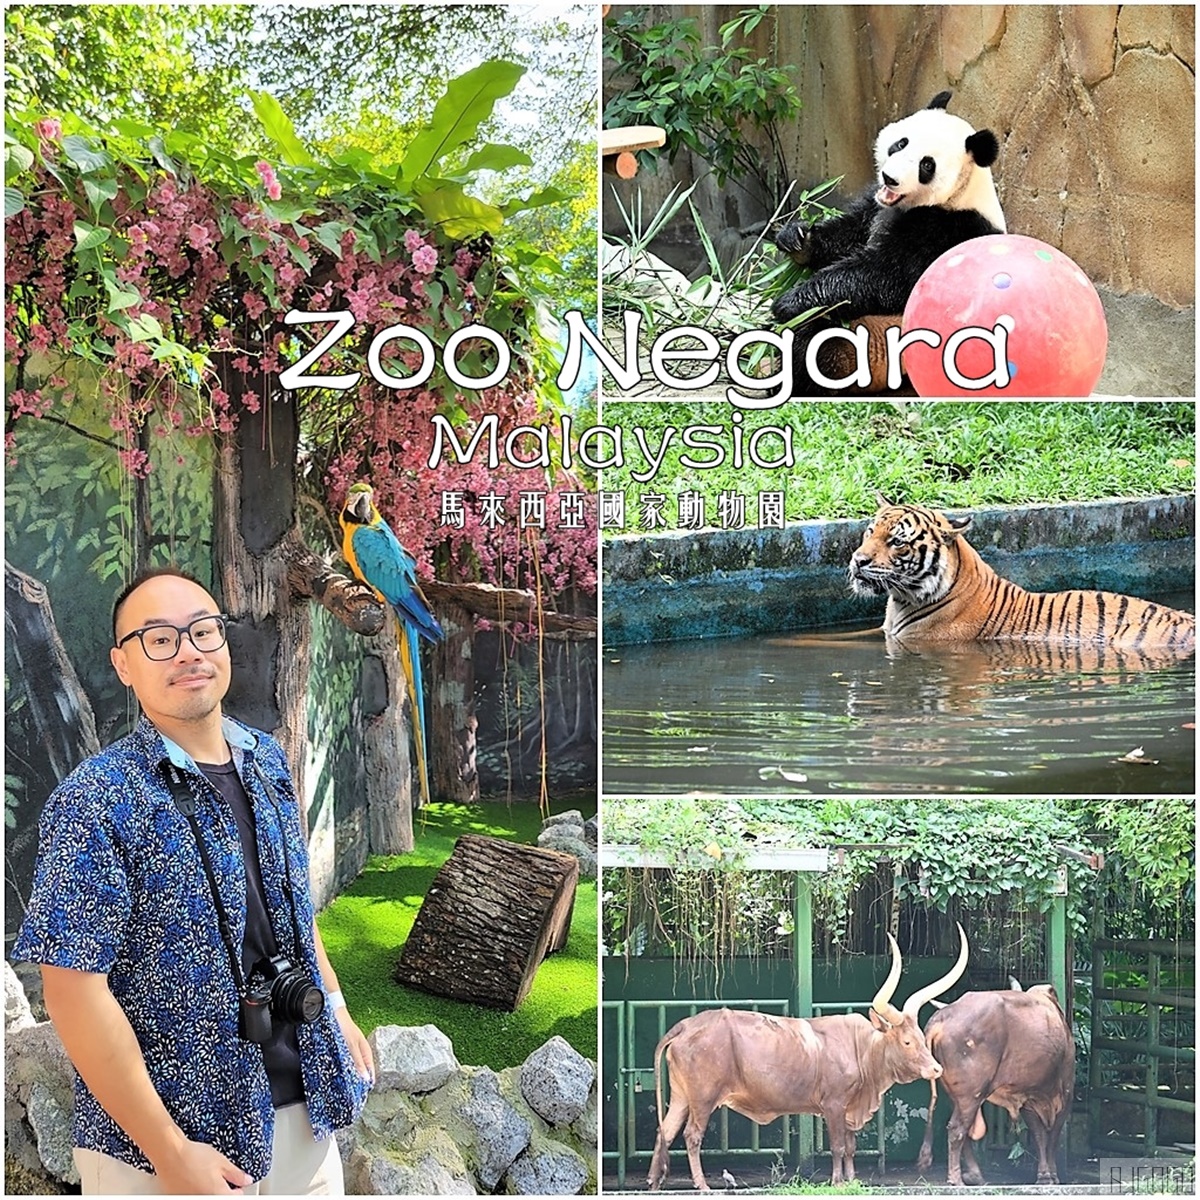 馬來西亞國家動物園 Zoo Negara Malaysia 吉隆坡近郊景點